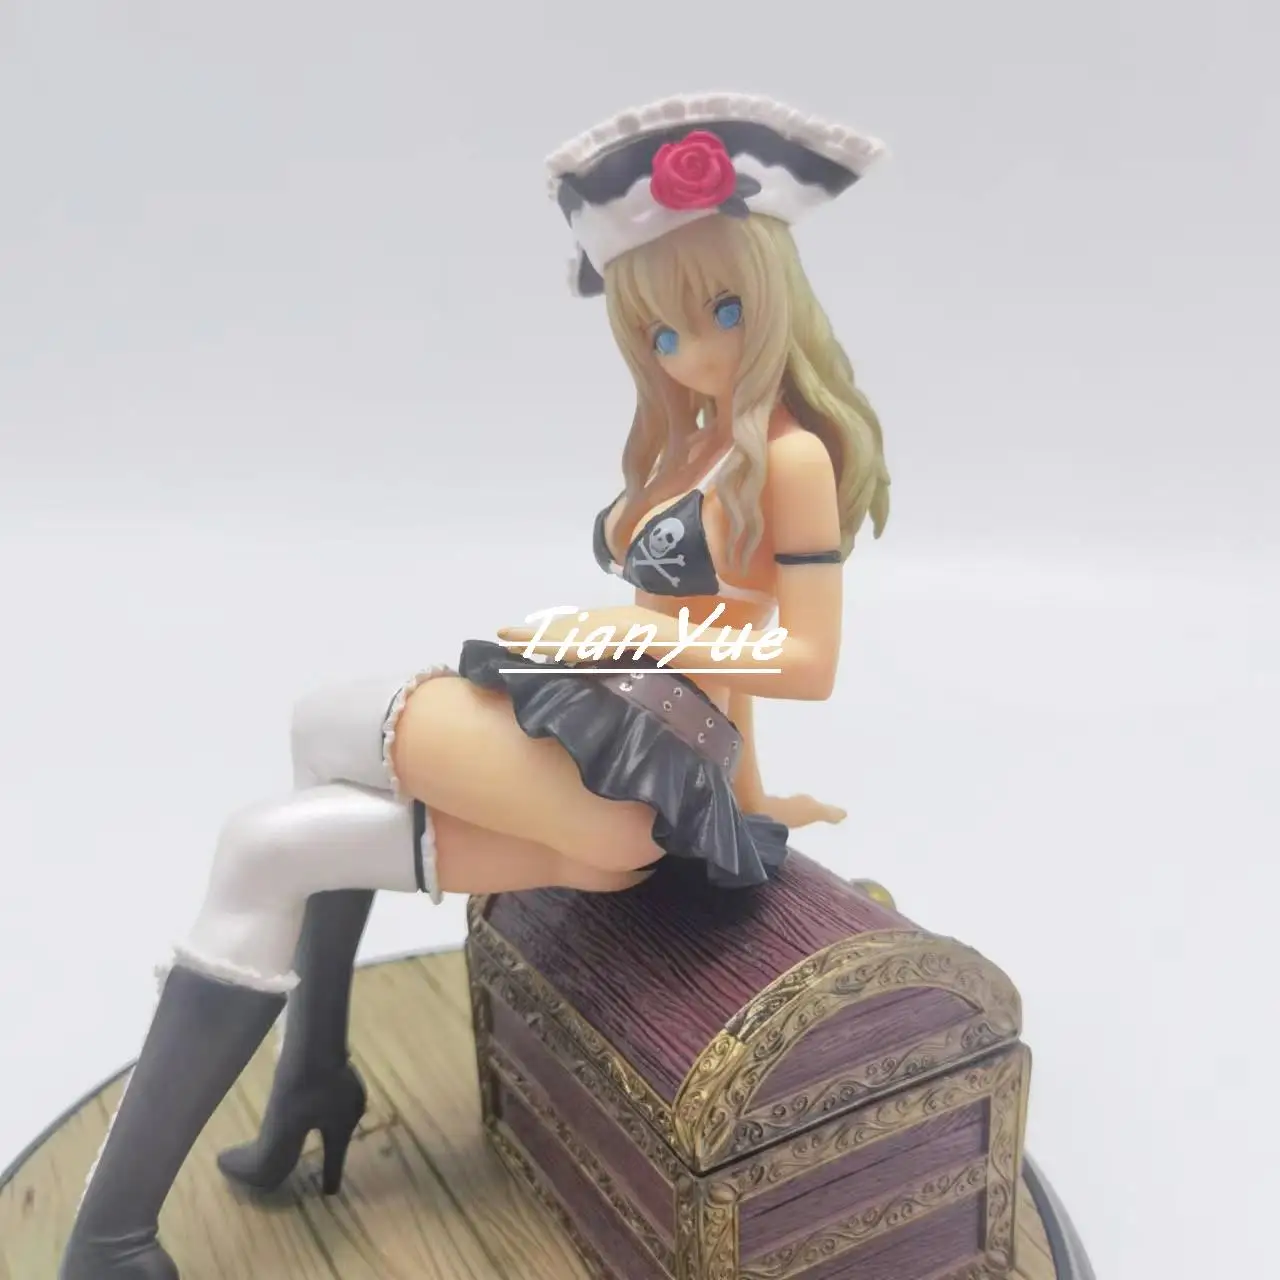 

Game Shining Ark Velvet PVC Sexy Girls Action Figure Model Toys 18cm